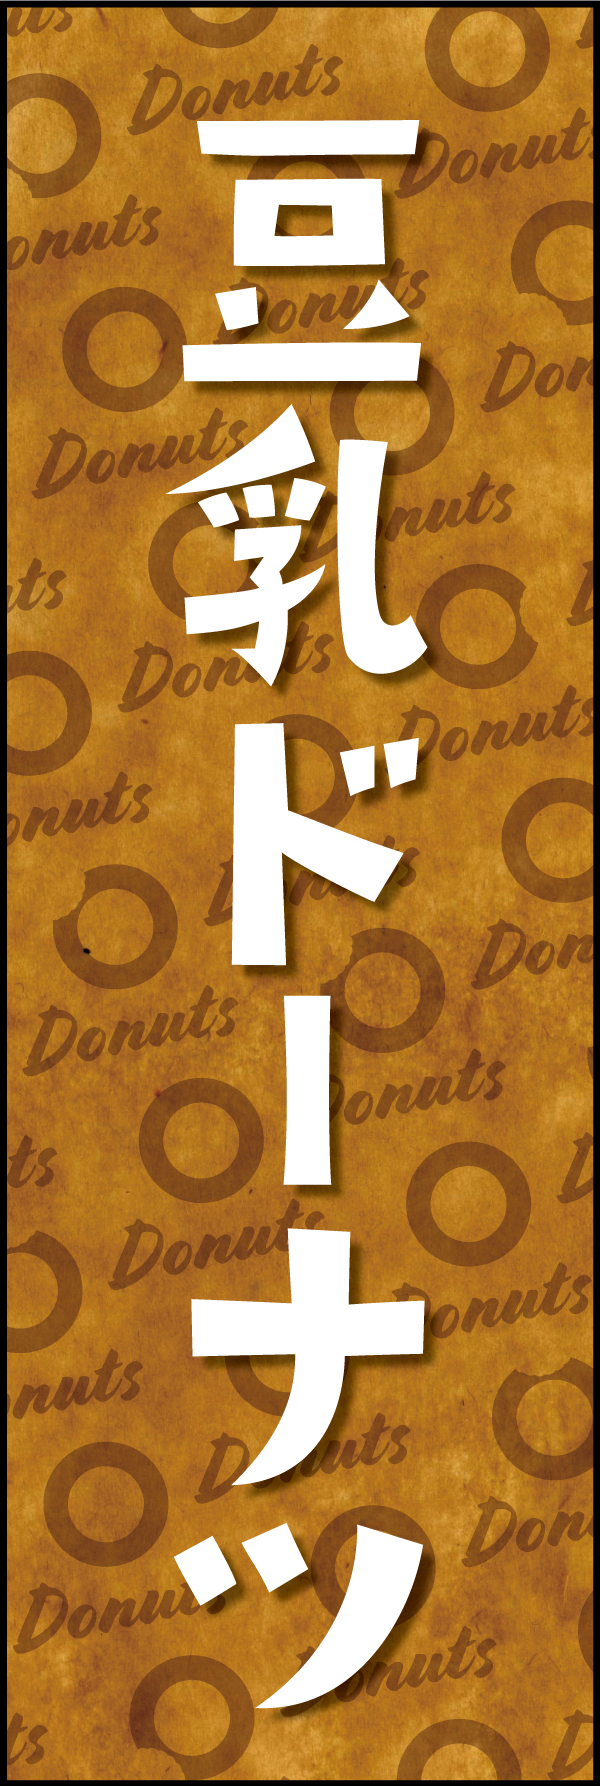 豆乳ドーナツ 190_01「豆乳ドーナツ」ののぼりです。クラフト感ある包み紙のような背景デザインと文字で、ヘルシーでオーガニックな雰囲気を演出しました。（Y.M） 